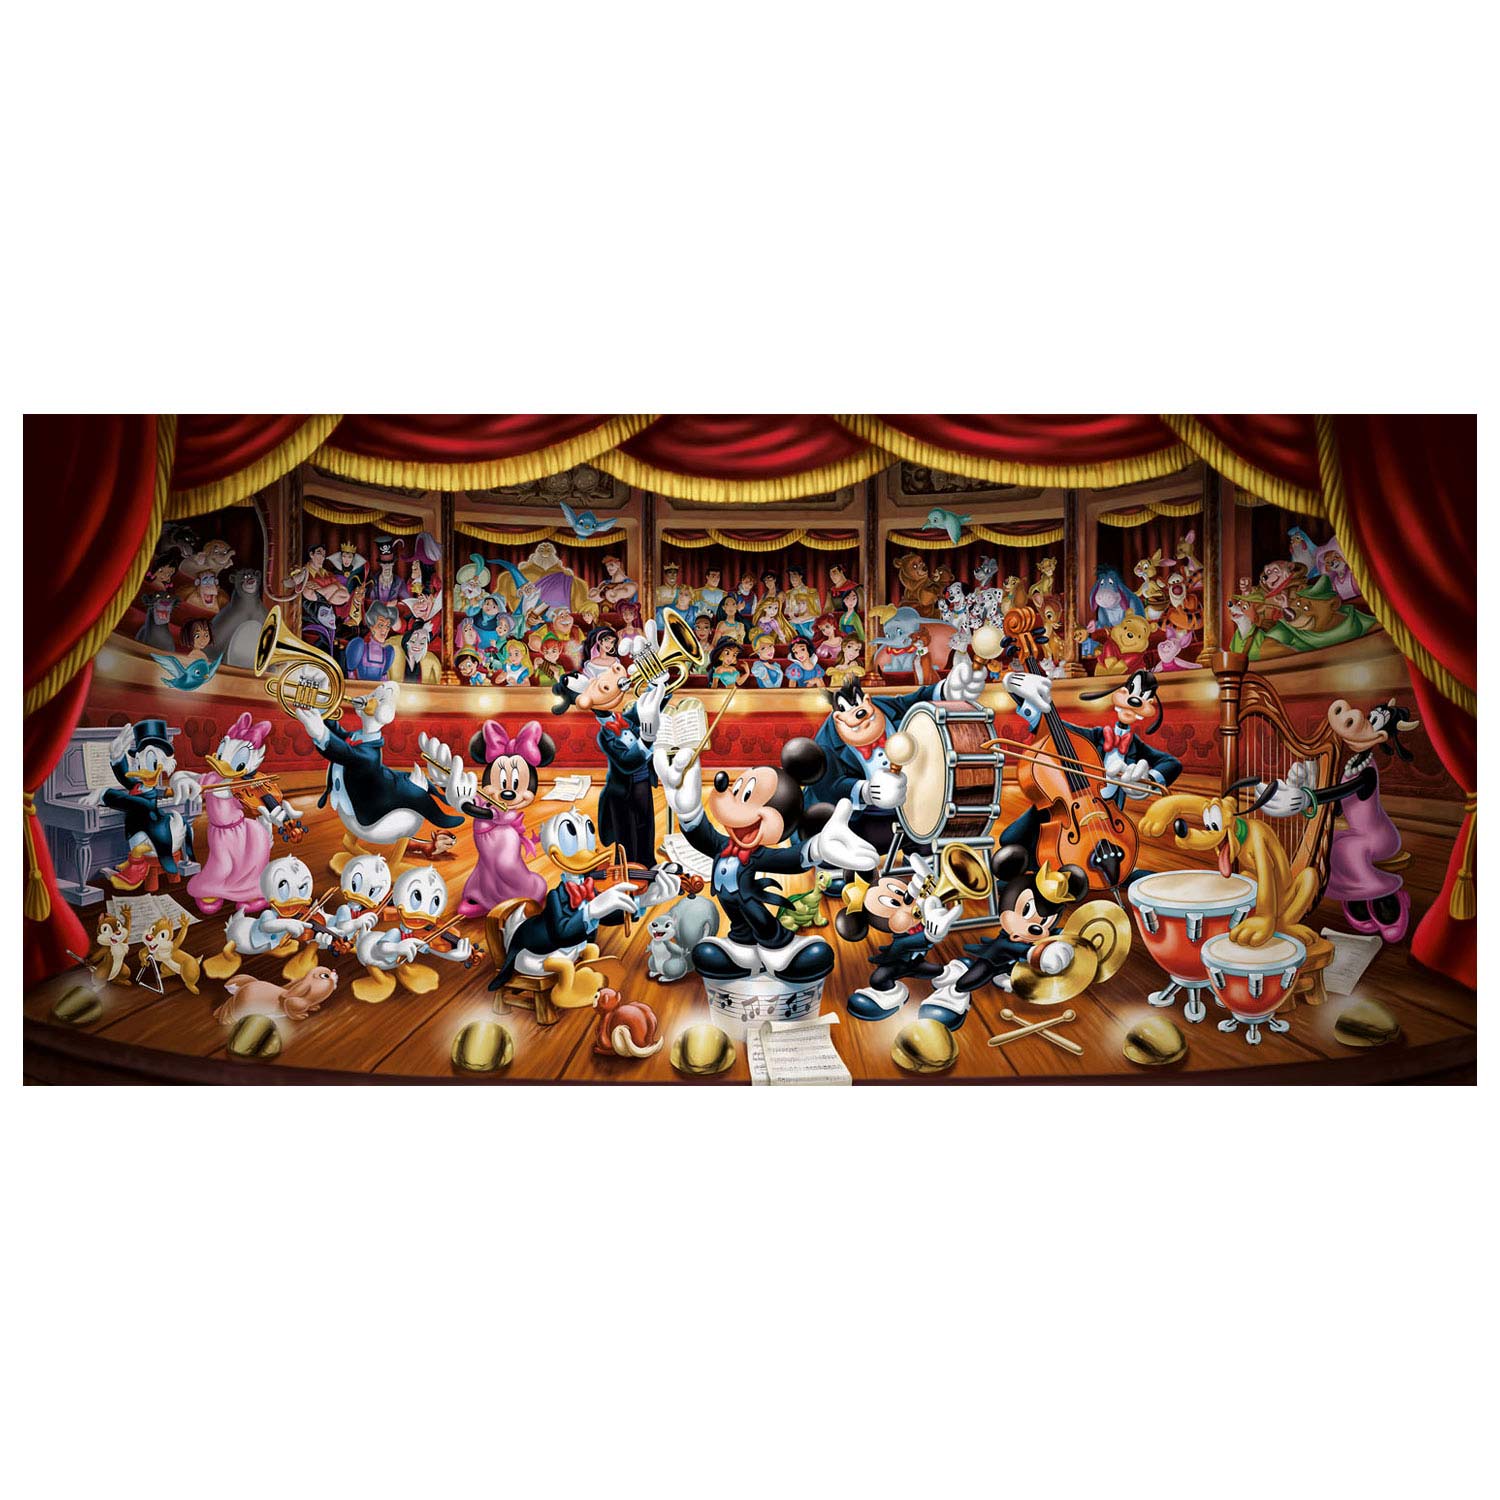 Clementoni Puzzle Disney Orchester, 13200 Teile.